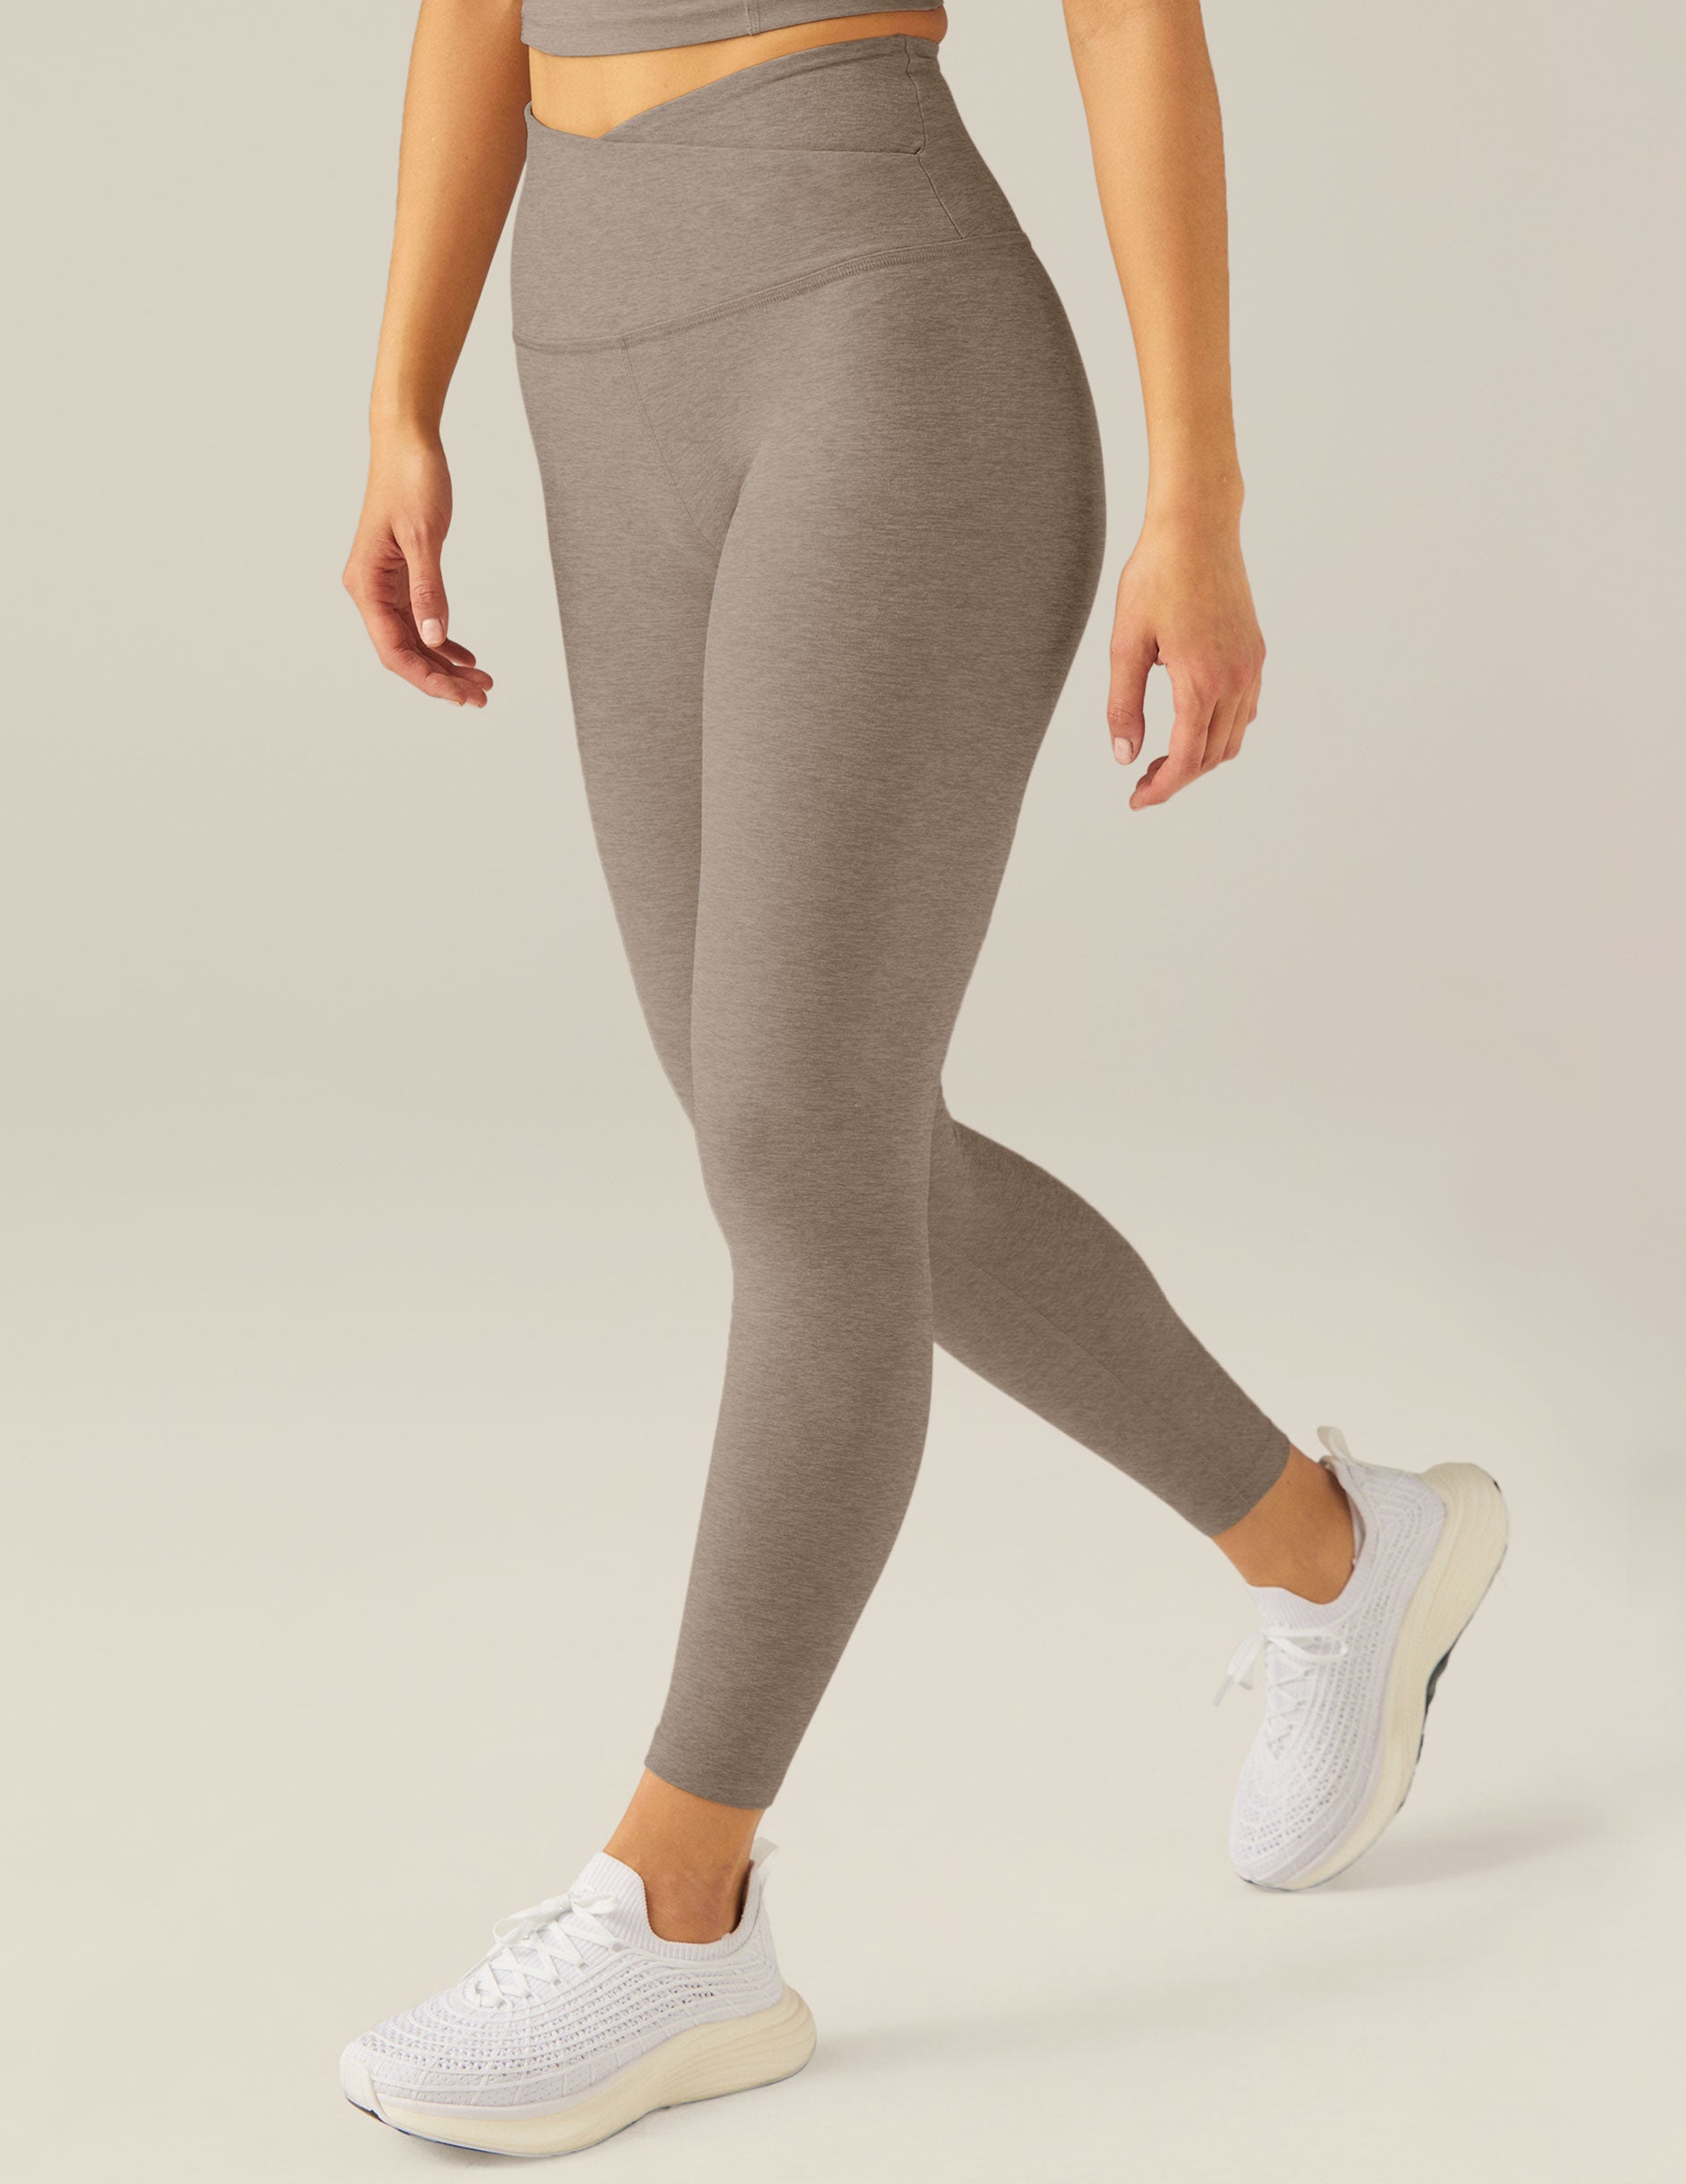 Myga Yoga Pants - Womens High Waisted Full Length Leggings for